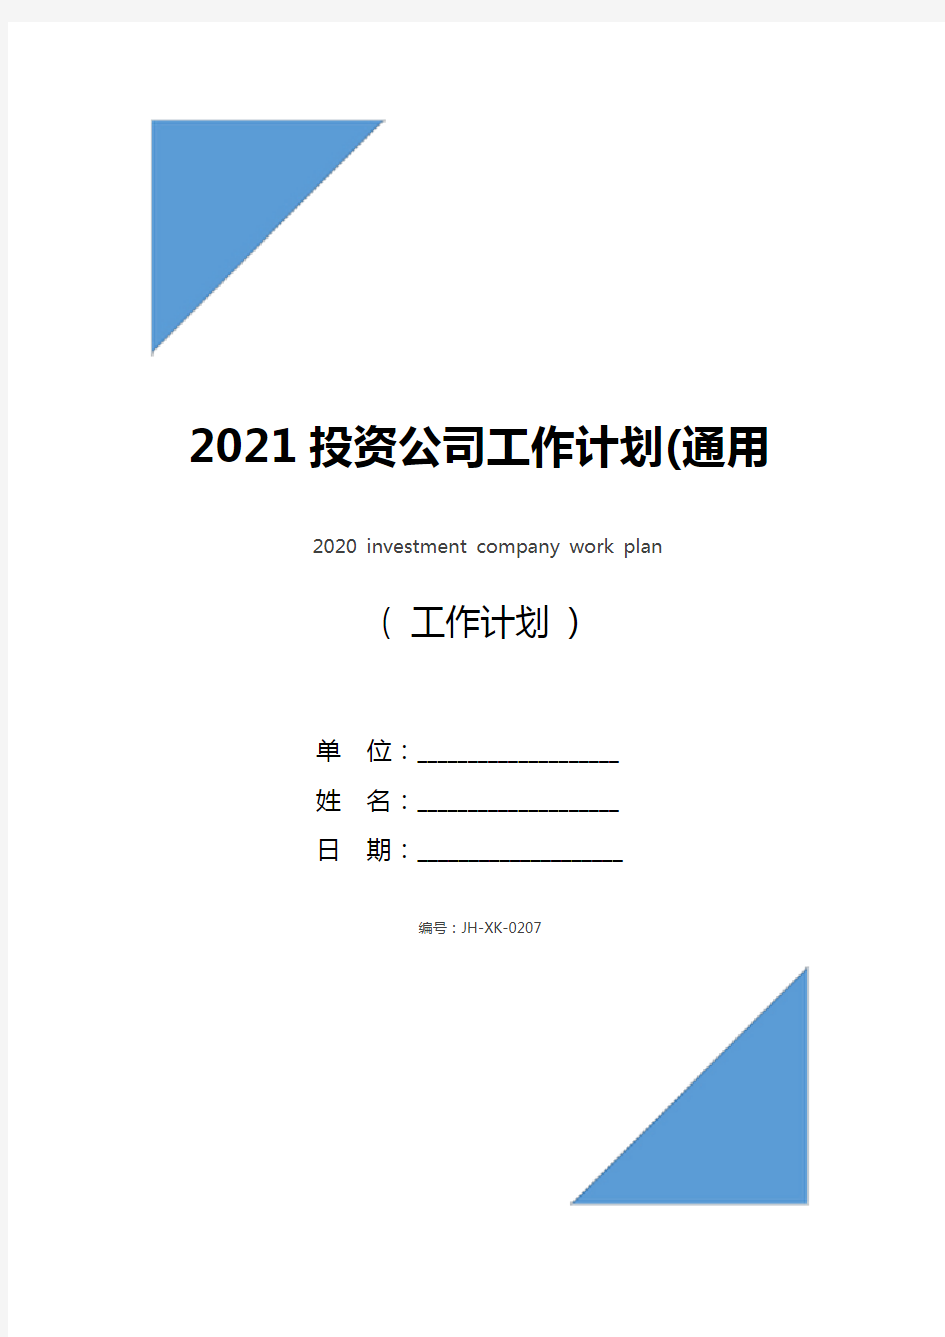 2021投资公司工作计划(通用版)